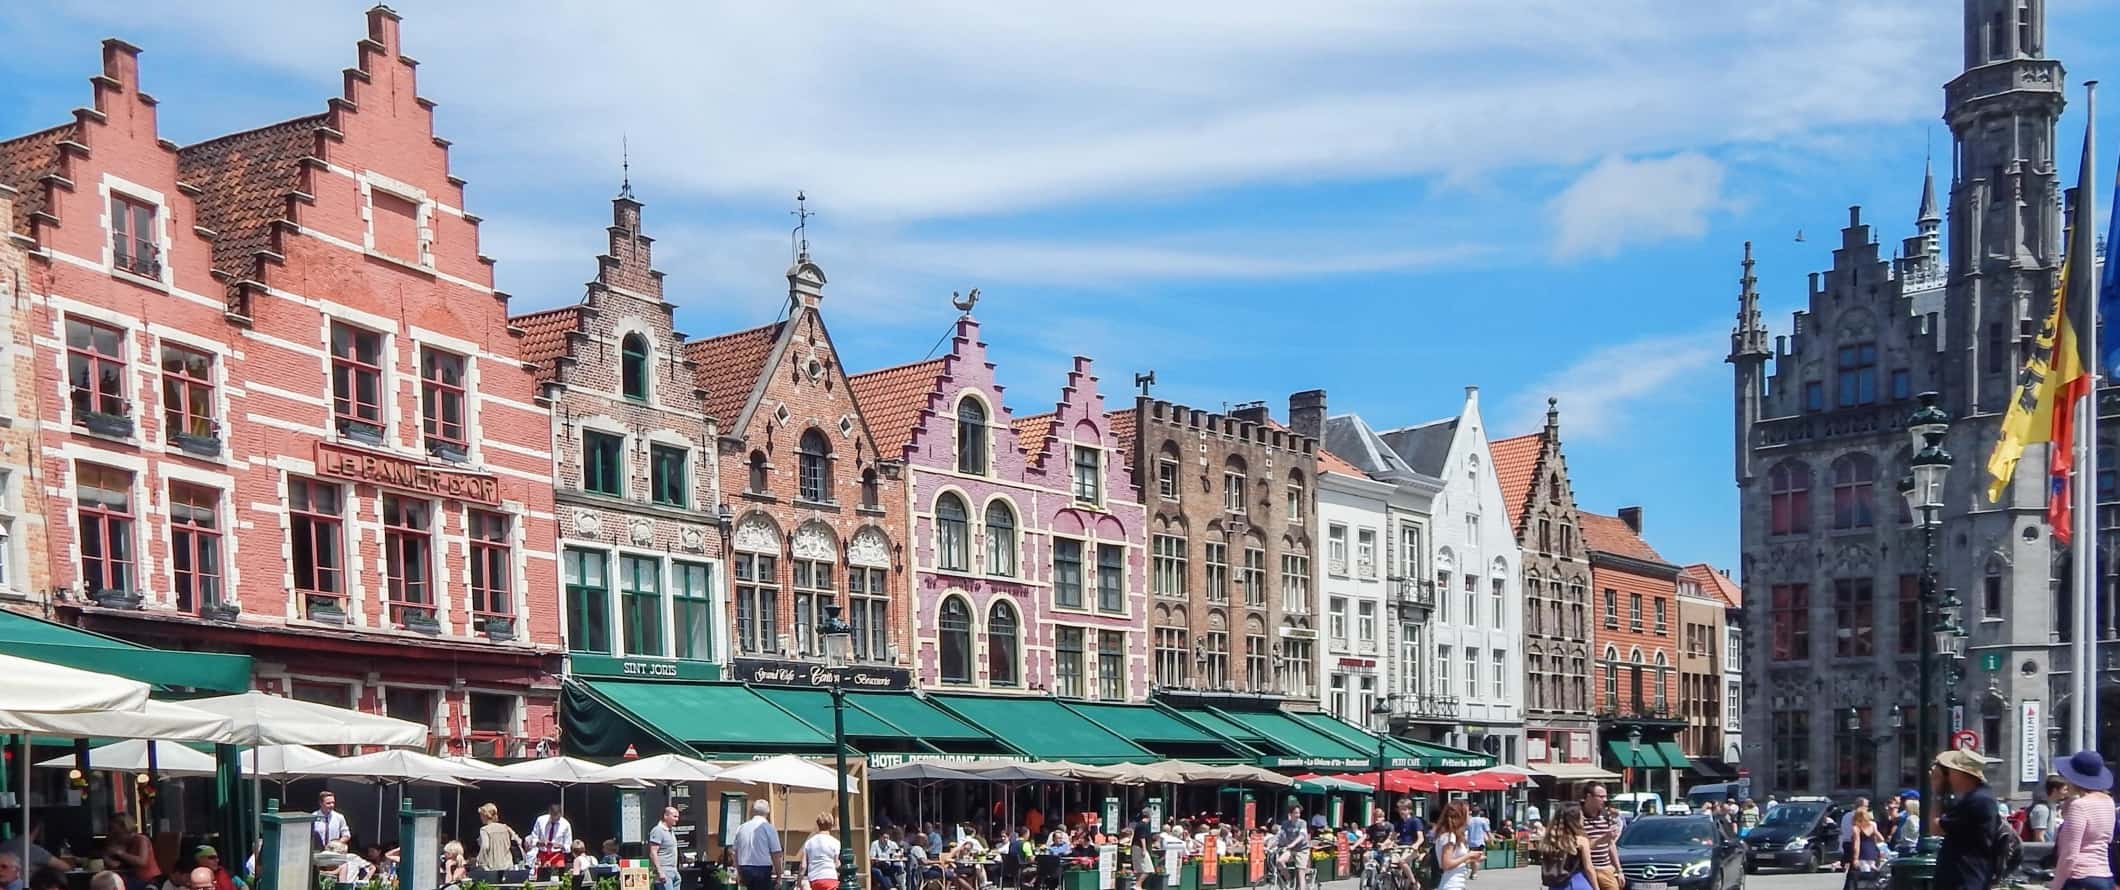 Grote Markt, a principal praça histórica com edifícios de tijolos coloridos em Bruges, Bélgica.